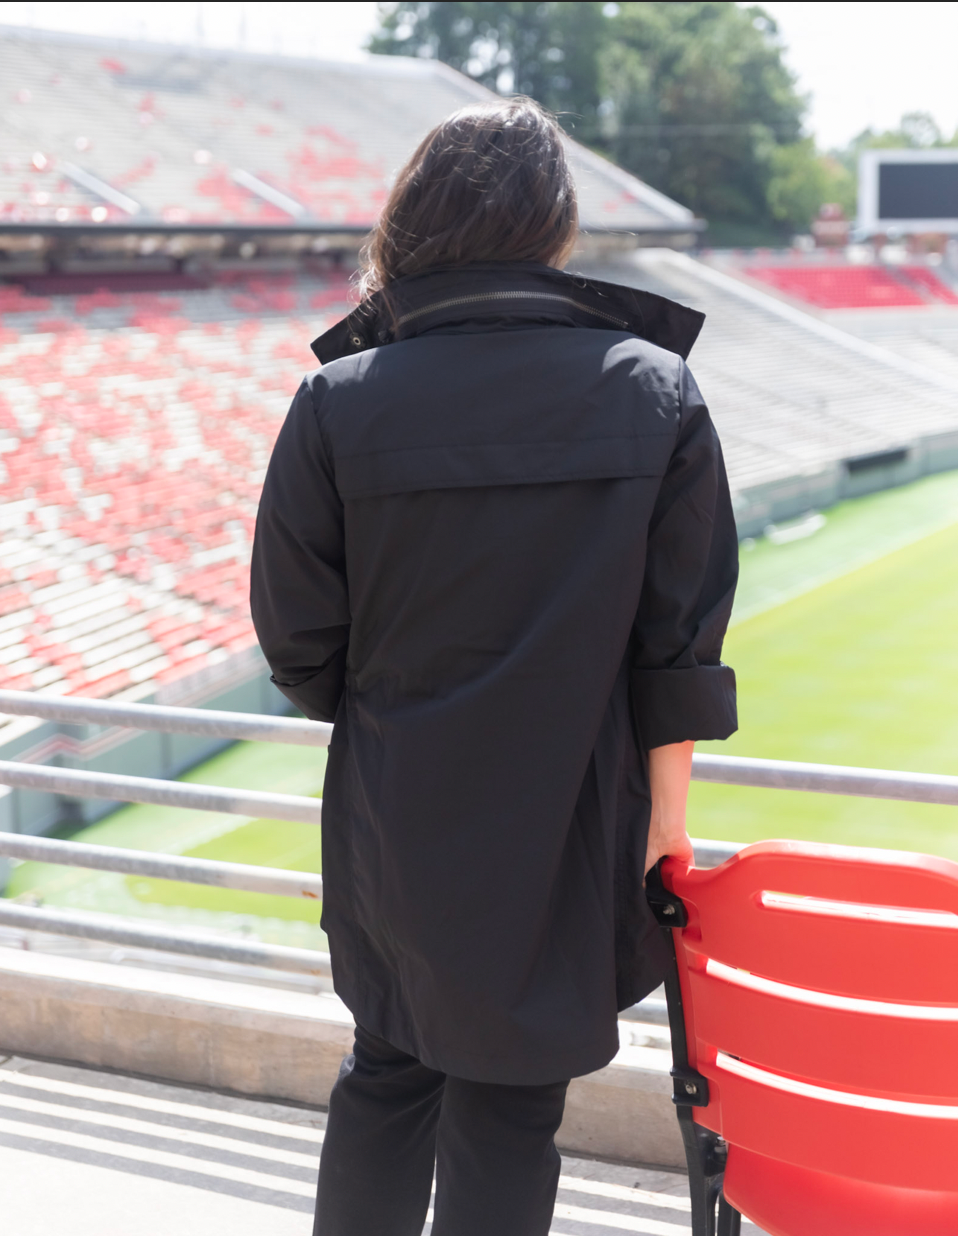 Anorak Jacket - Black, zipper, buttons, pockets, hood